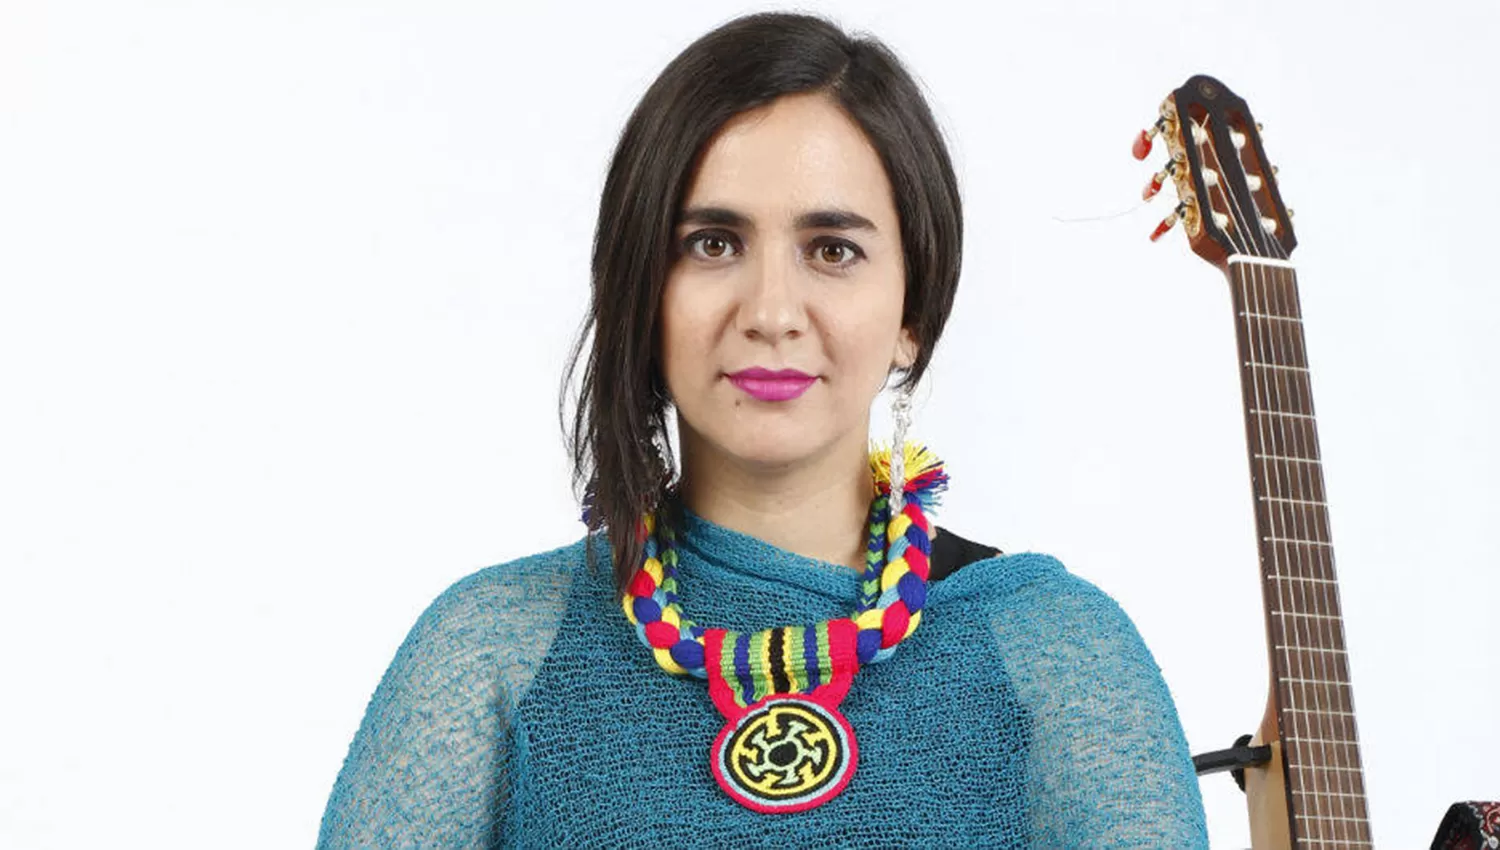 La cantante colombiana Marta Gómez se presentará este jueves en Tucumán